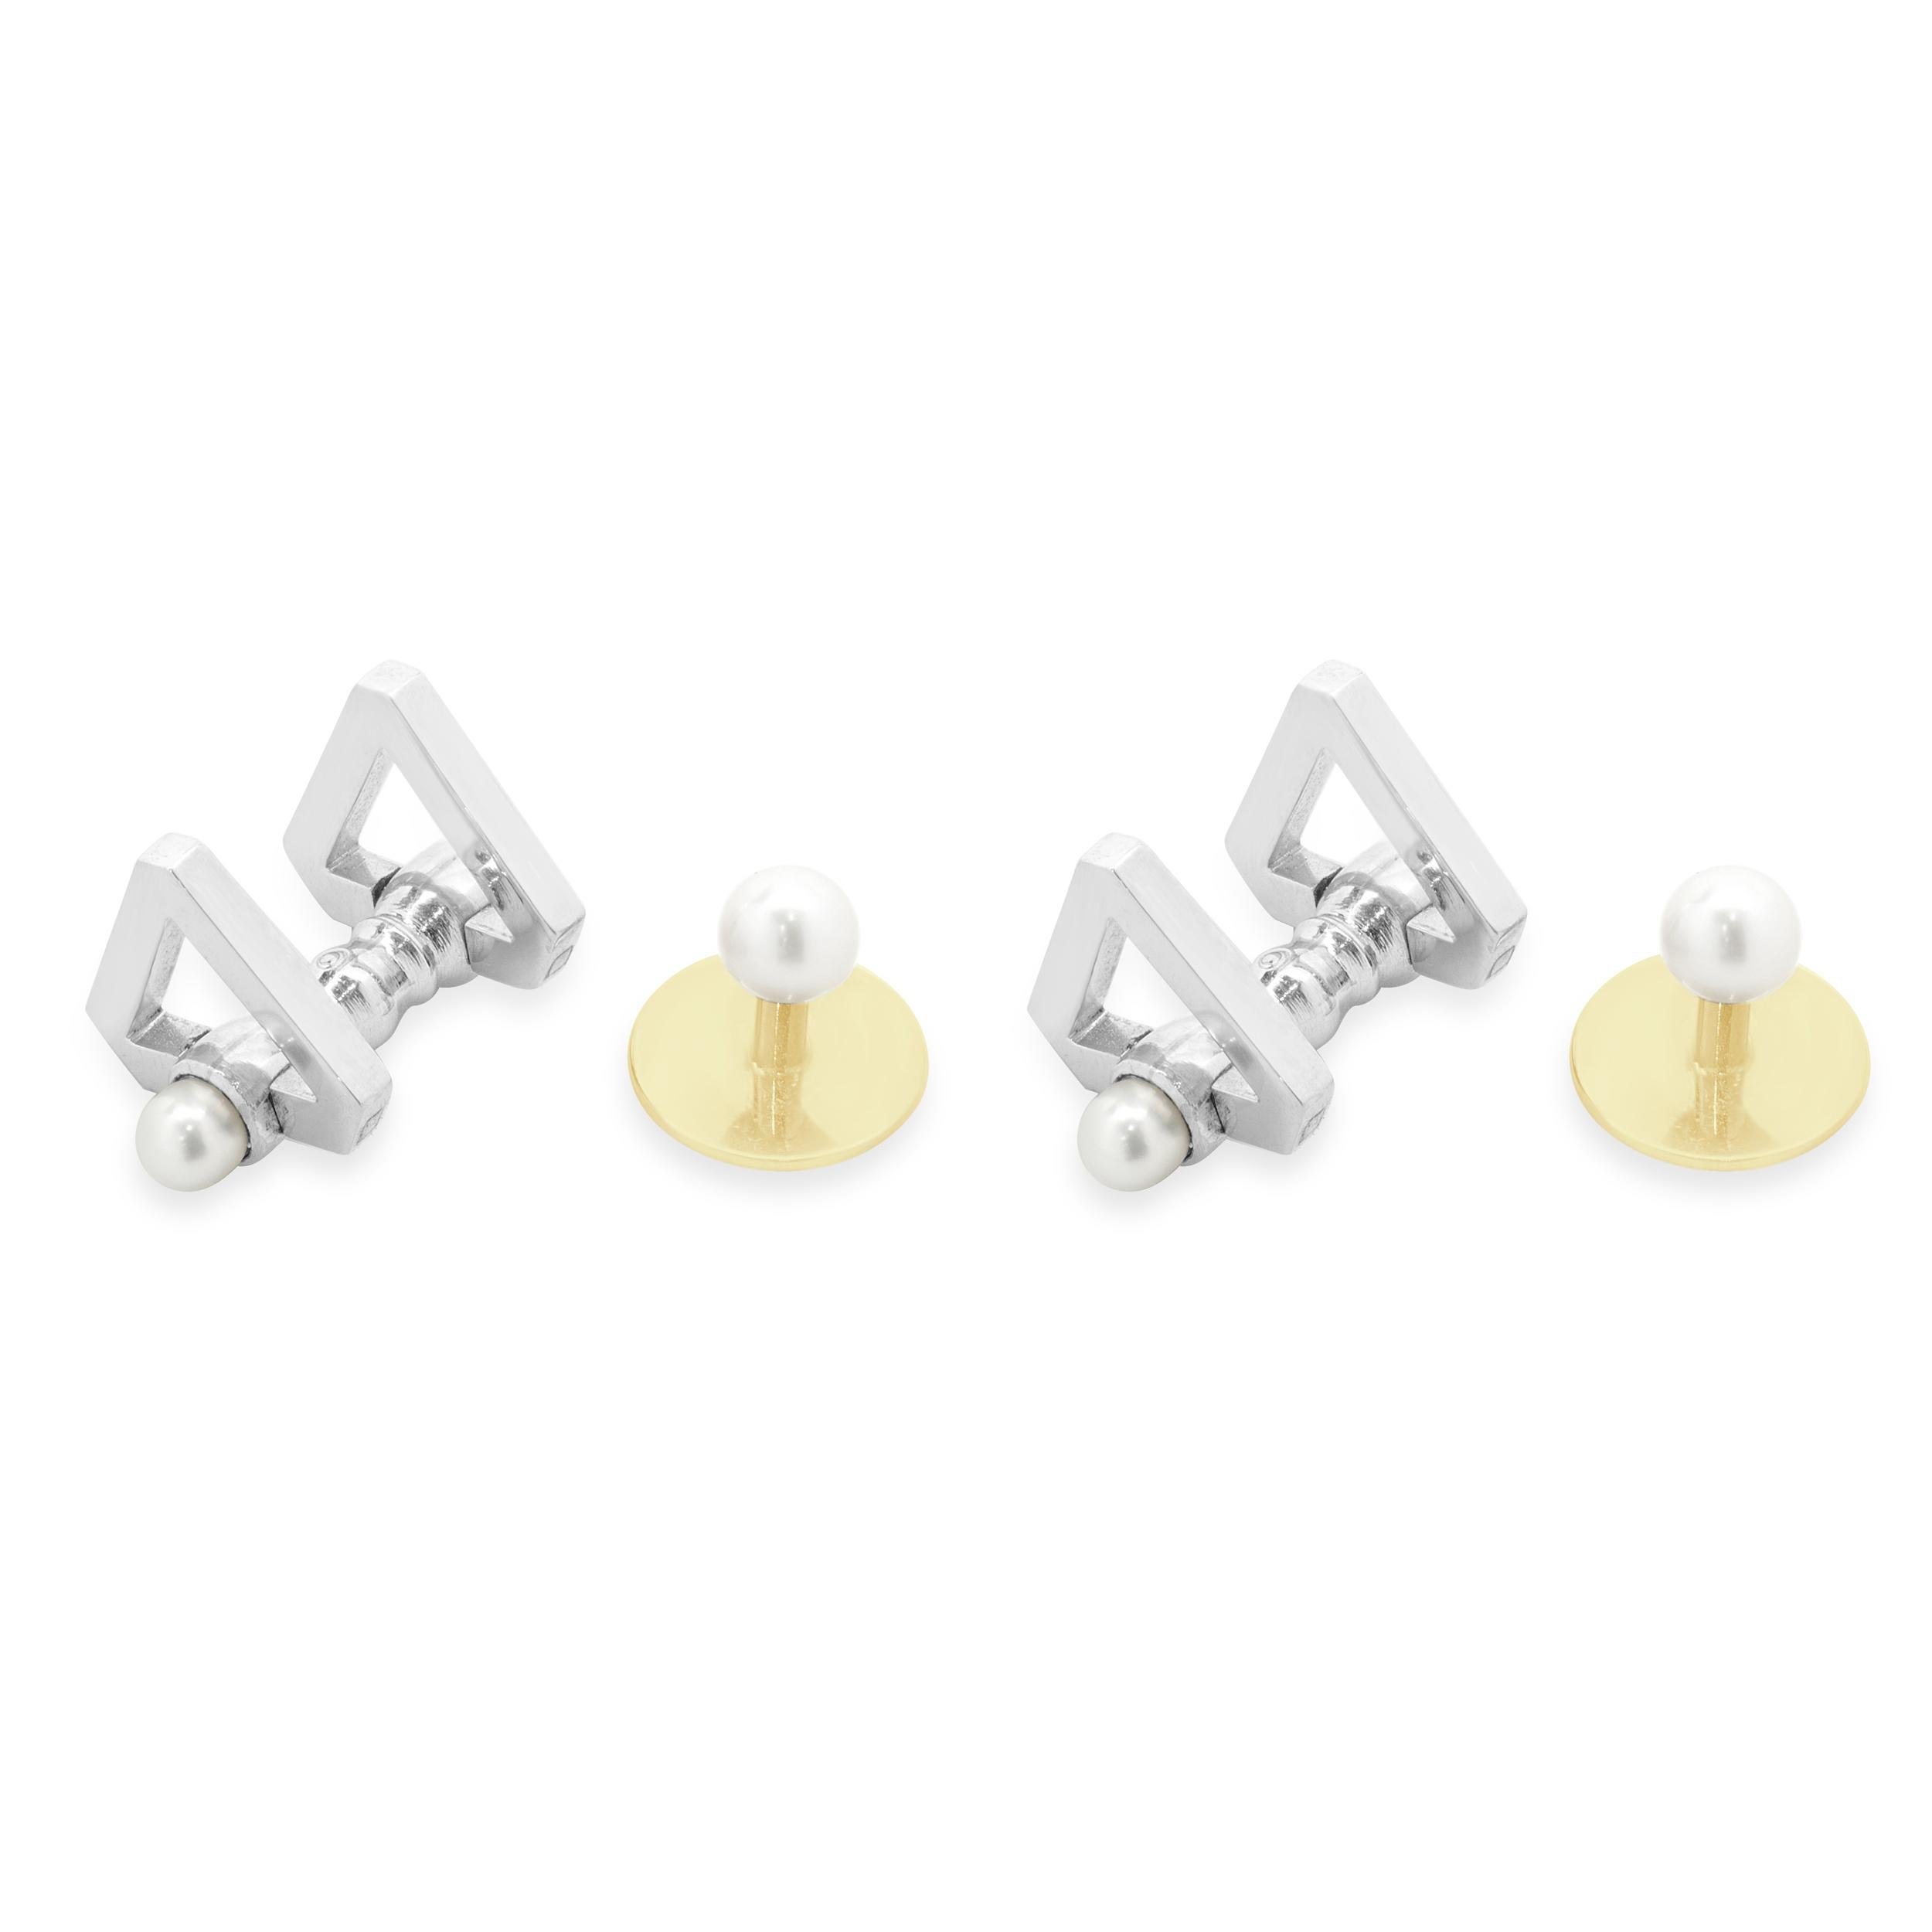 Designer : Tiffany & Co. 
Matière : Platine et or jaune 18k
Dimensions : Boutons de manchette de 5 mm et clous de perle de 5 mm
Poids : 20,63 grammes
Boîte d'origine
Monogramme MGD